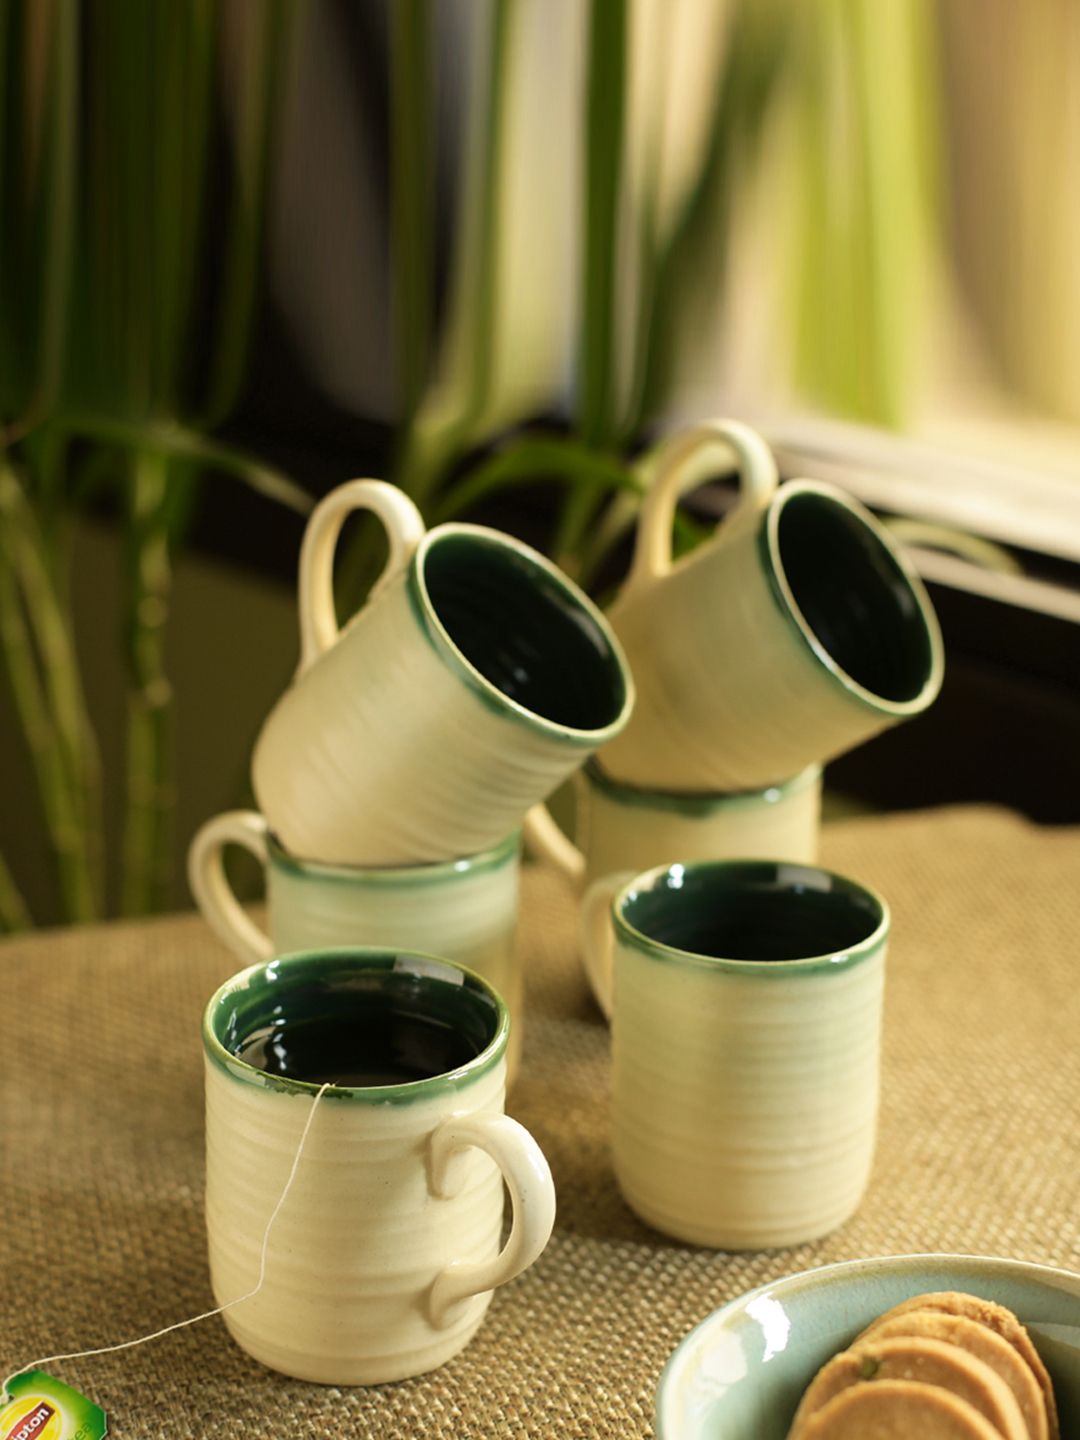 ExclusiveLane Cream-Coloured 6-Pieces Textured Ceramic Tea & Coffee Cup Set Price in India